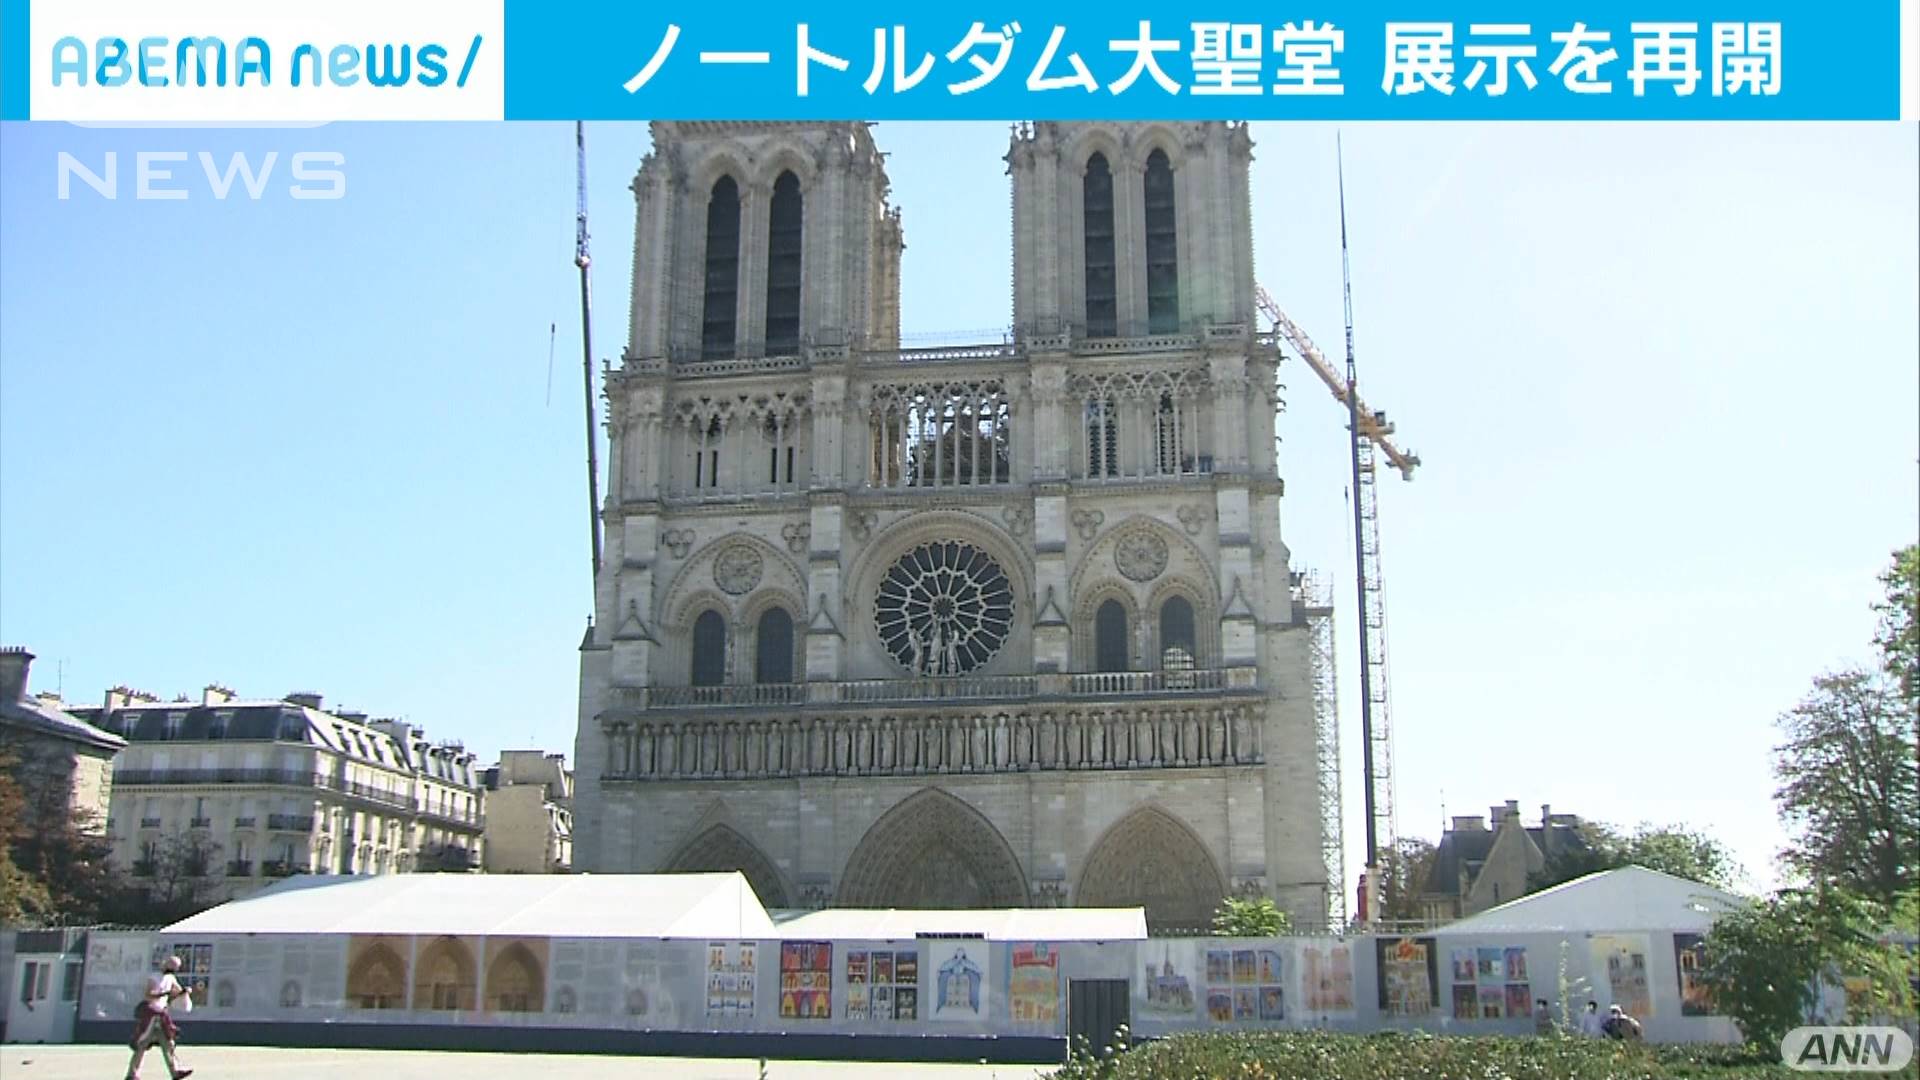 パリ ノートルダム大聖堂で地下の展示施設を再開 テレ朝news テレビ朝日のニュースサイト